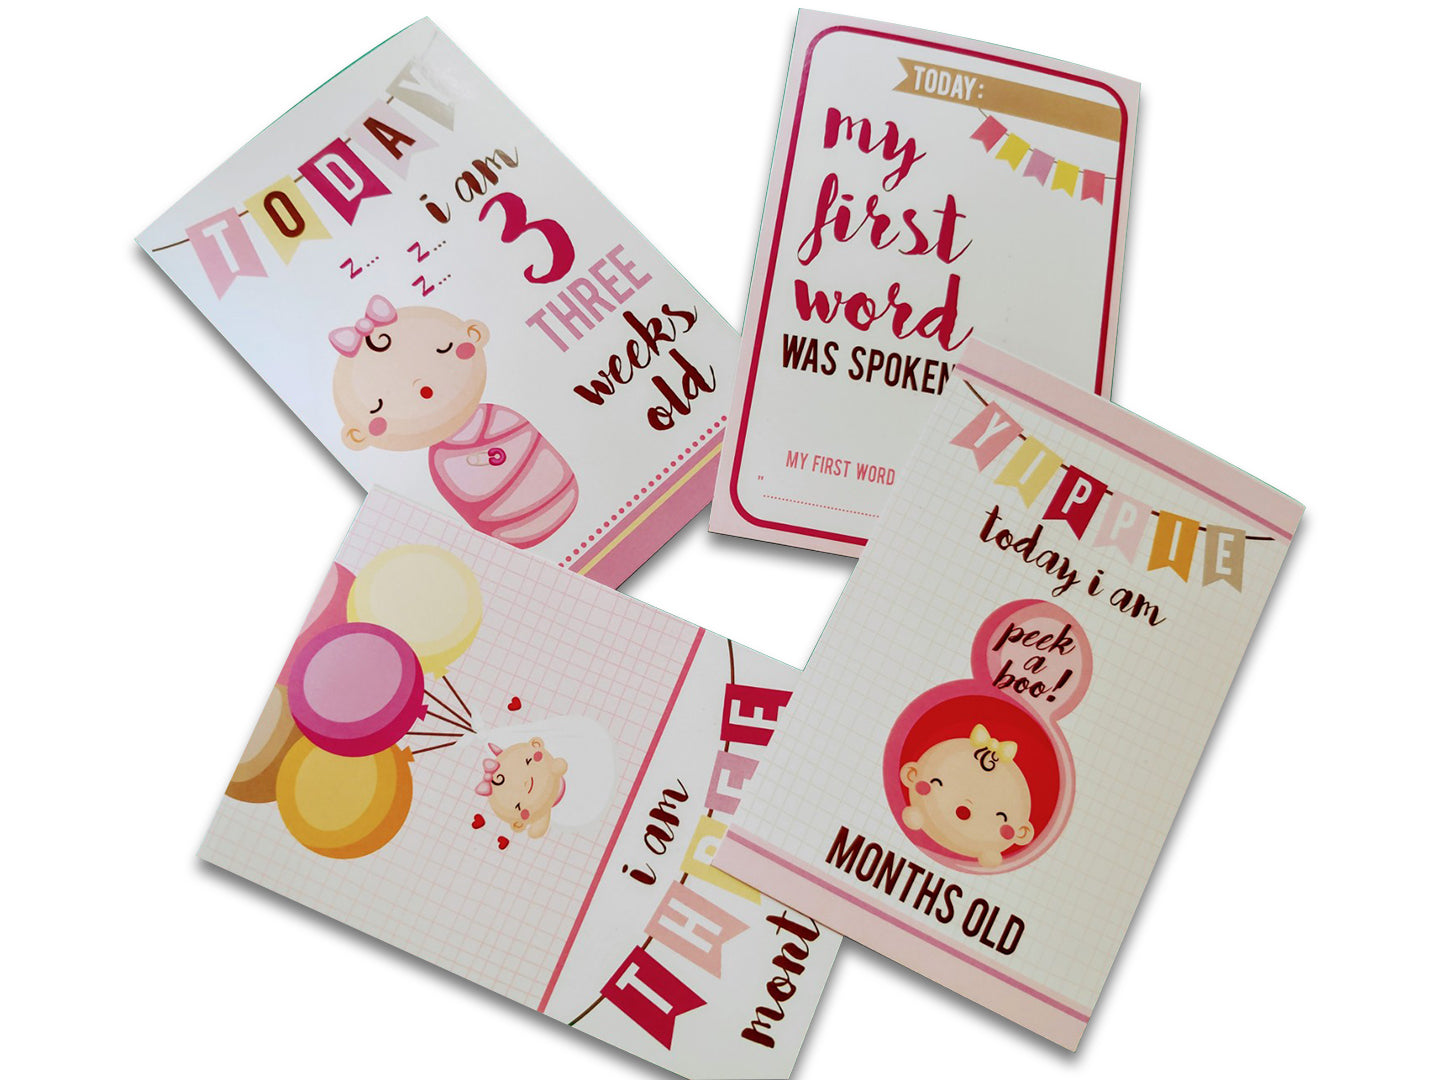 Baby Girl milestone cards- Pack of 24 - PyaraBaby